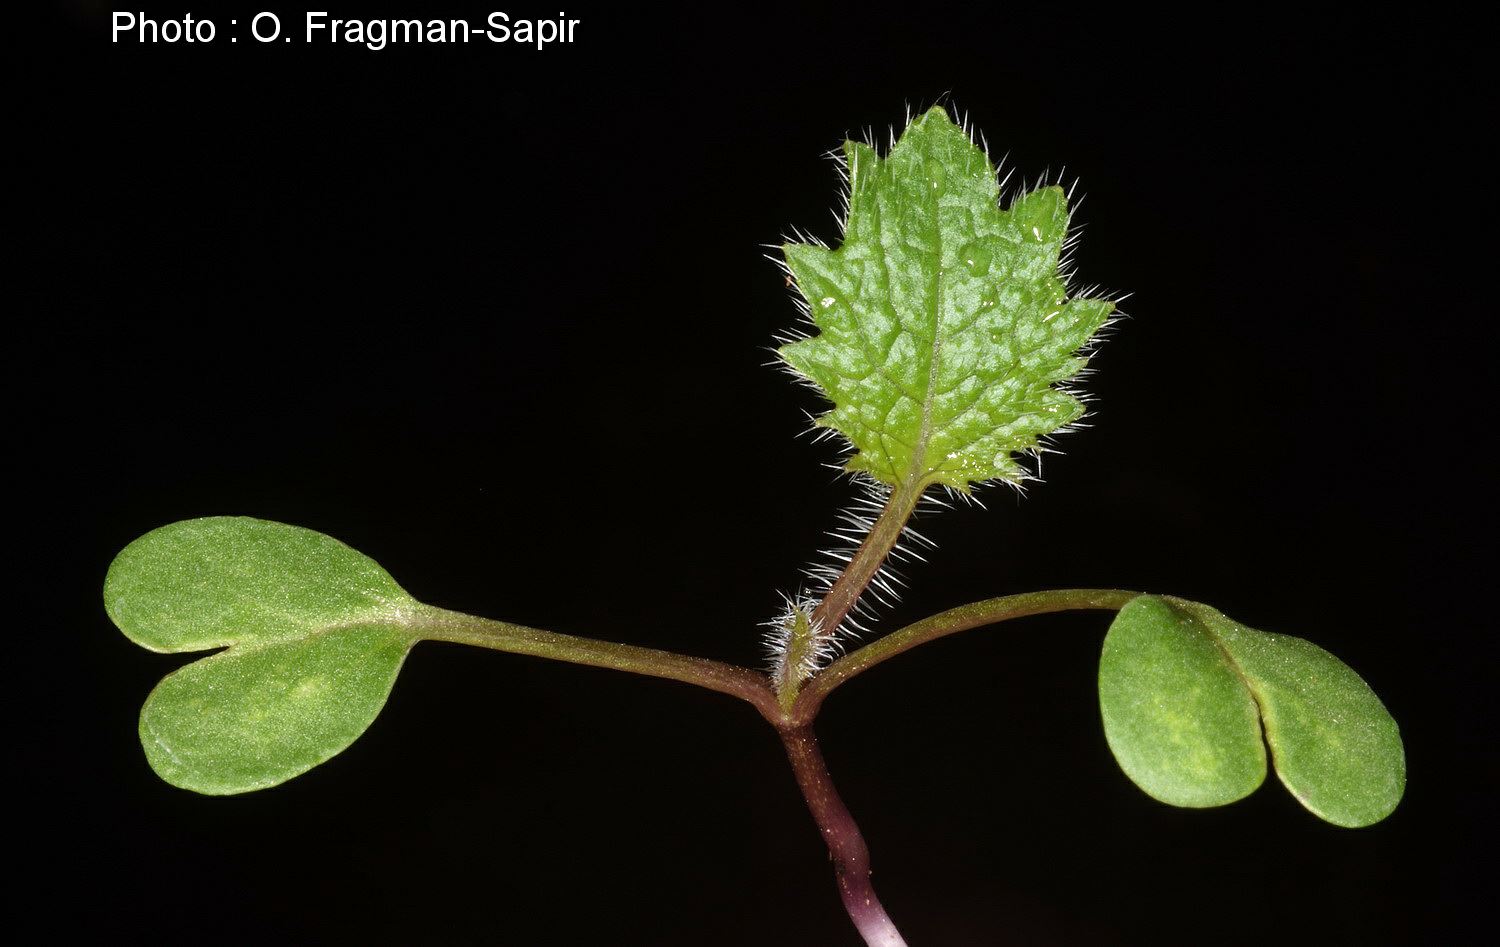 Crambe cordifolia - Heartleaf Crambe, Colewort, כרבה לבובה, כרבה לבובה